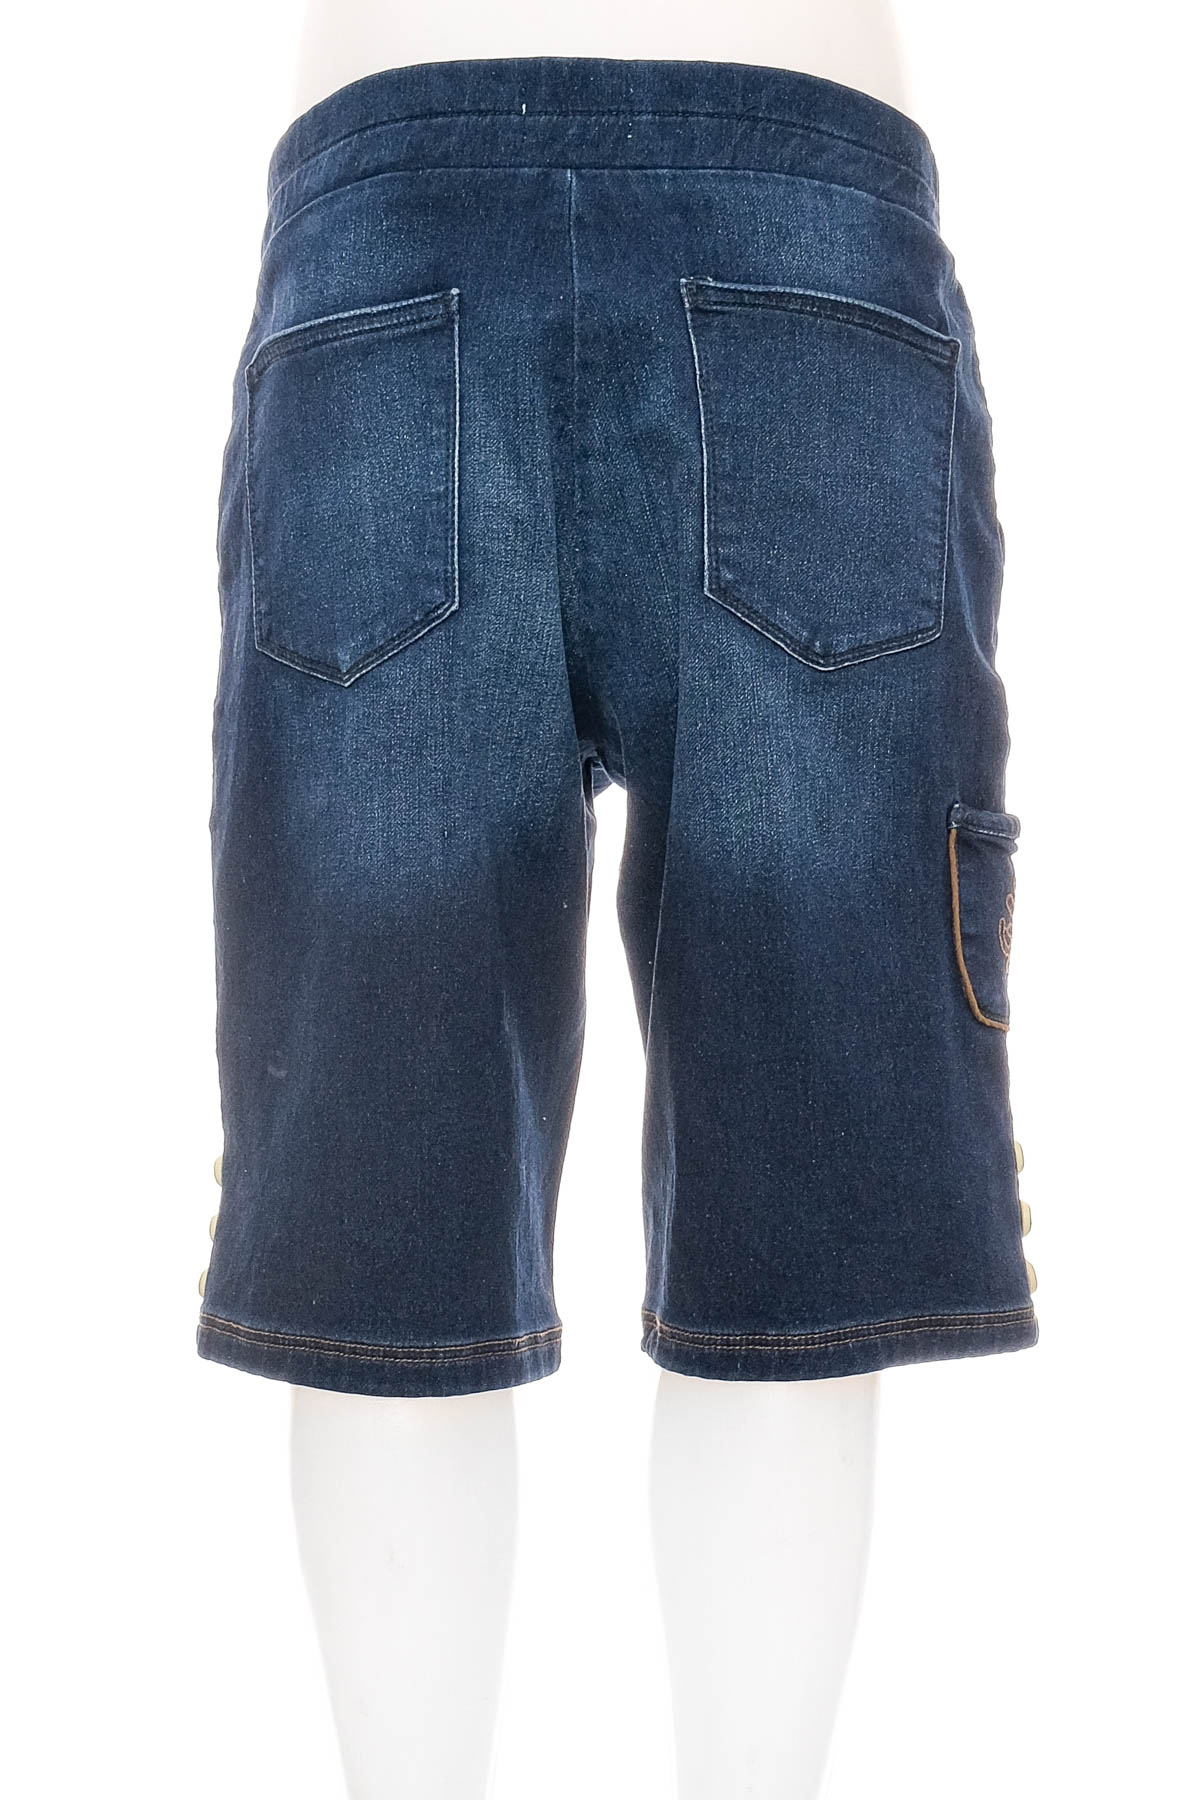 Pantaloni scurți bărbați - Waldschutz - 1